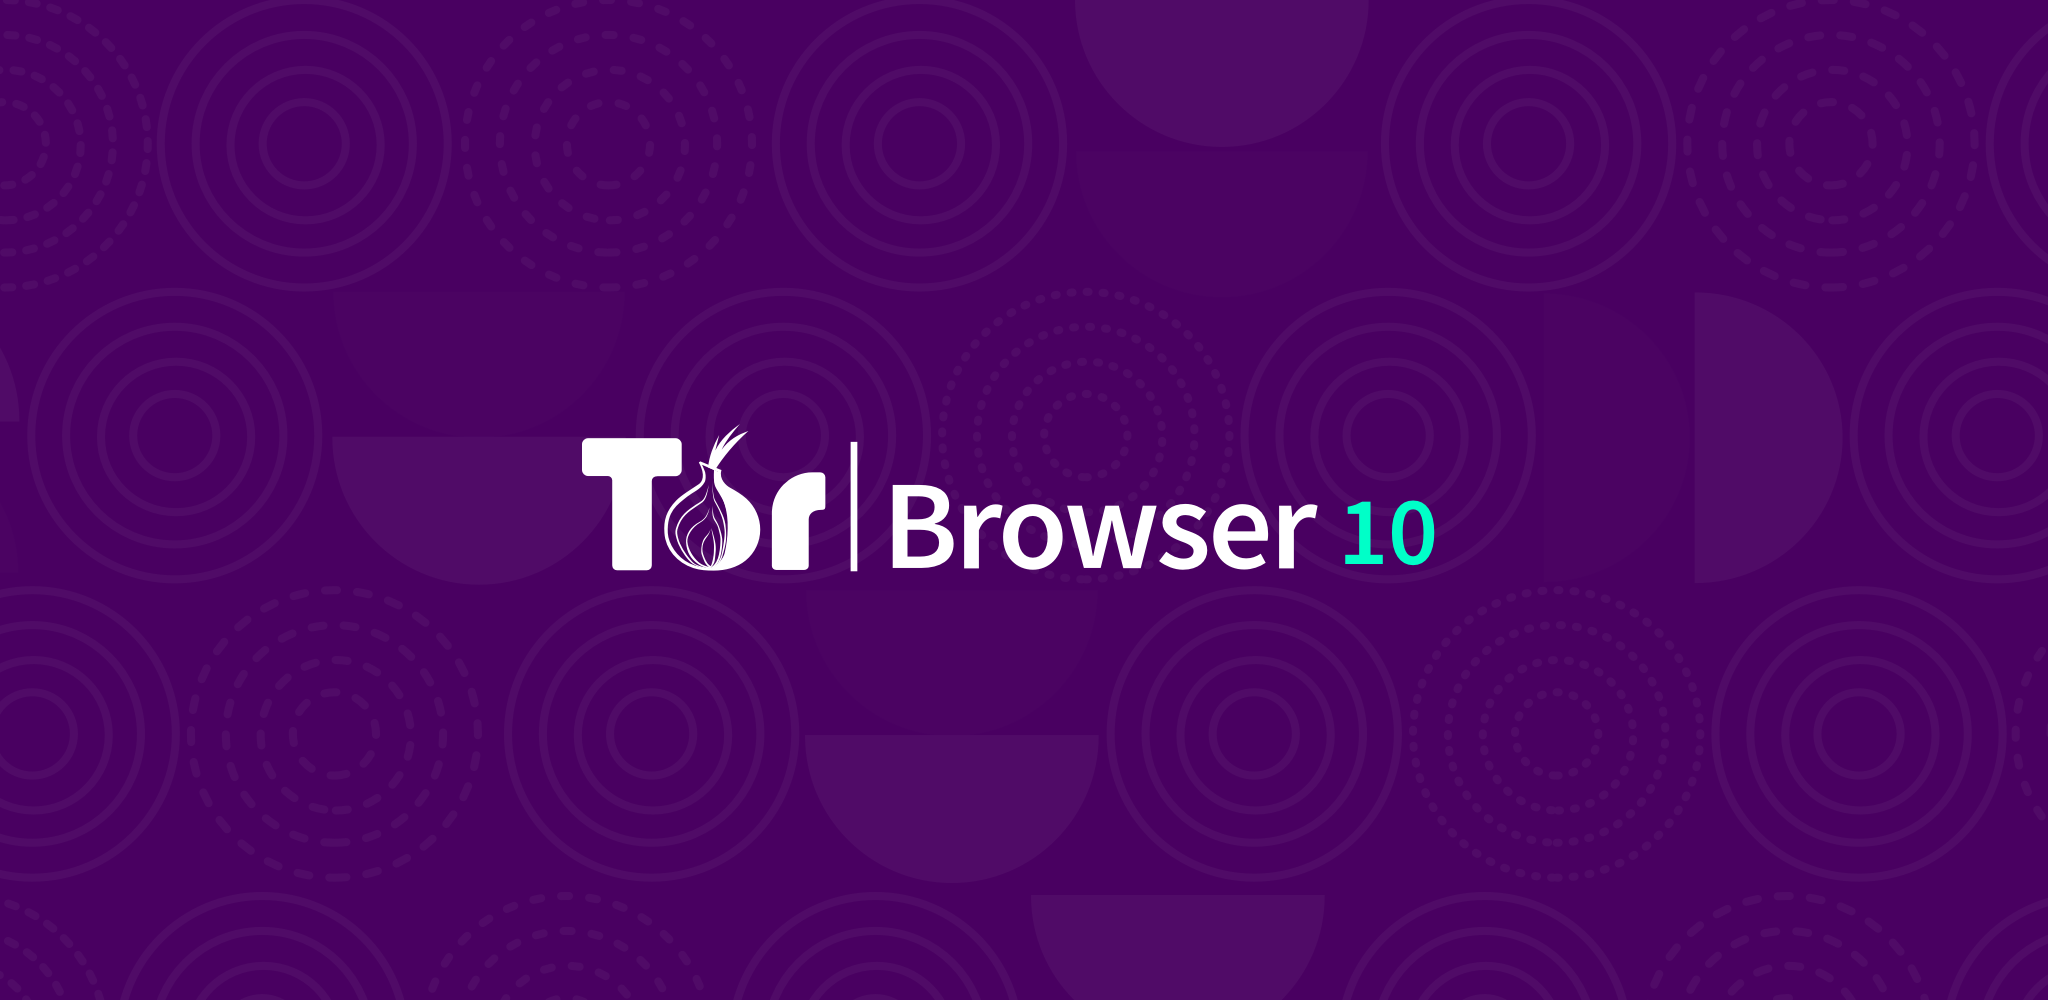 Как установить tor browser в debian gydra как настроить мосты в тор браузер вход на гидру